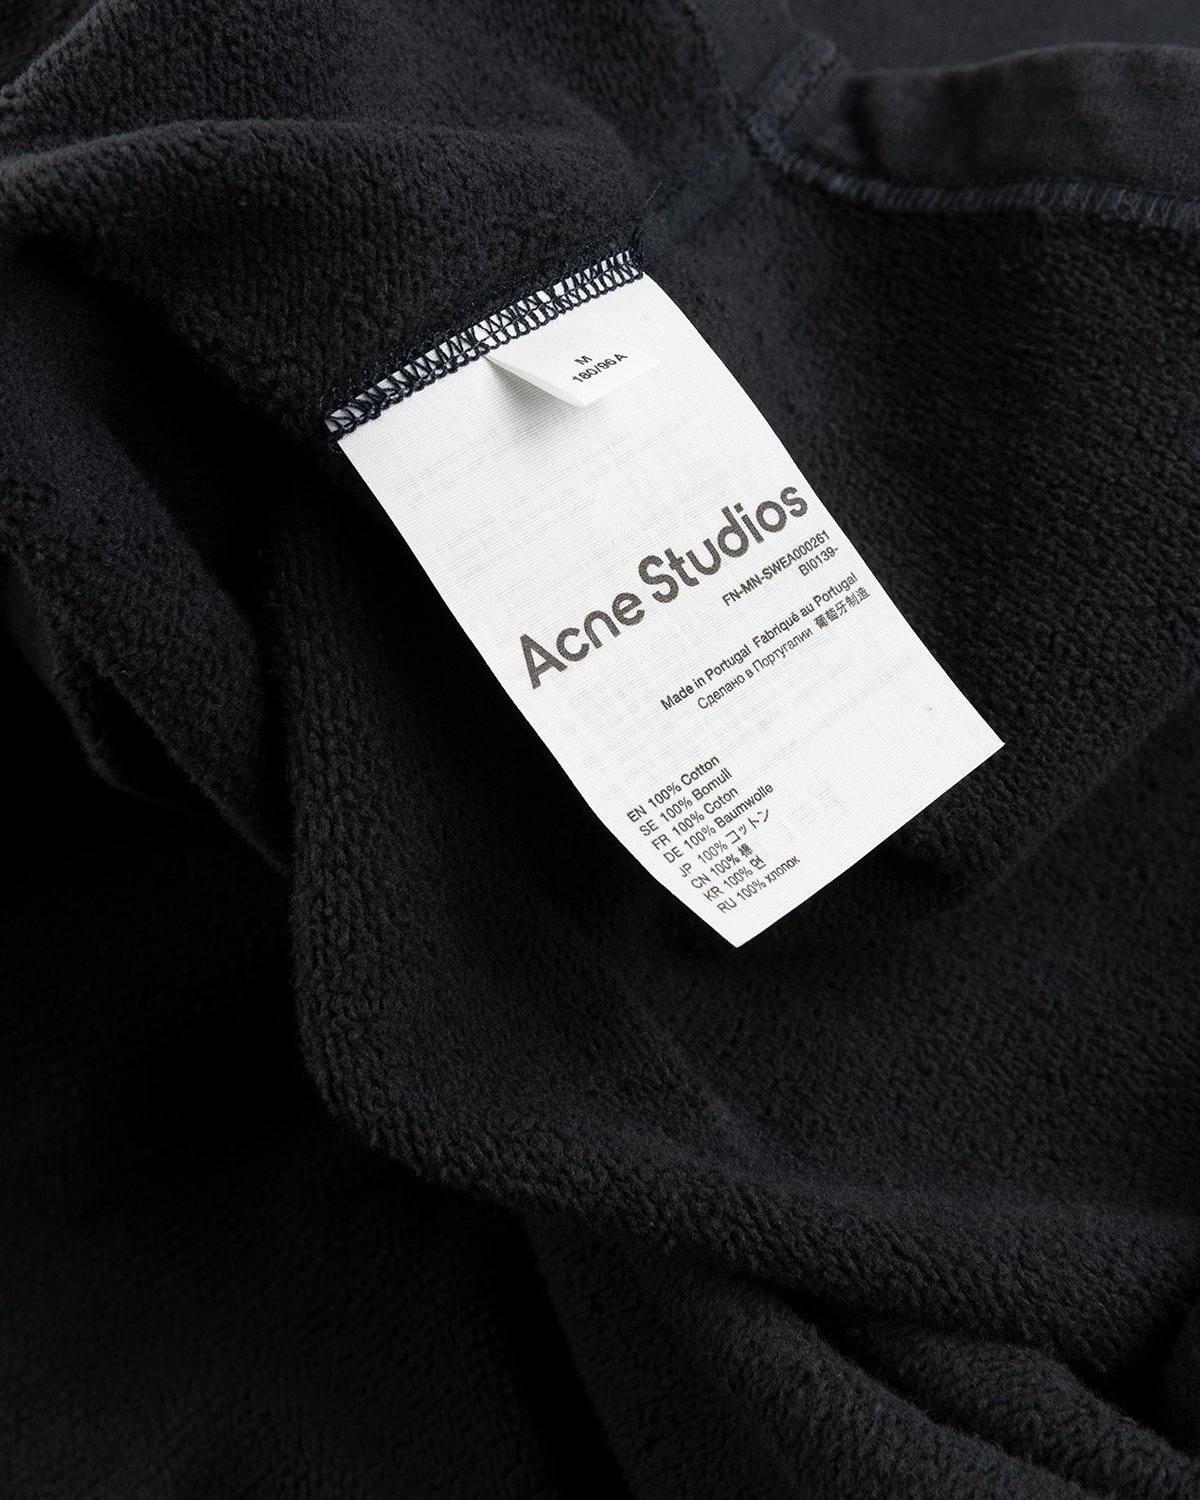 Acne Studios - Hoodie Black - Clothing - Black - Image 5